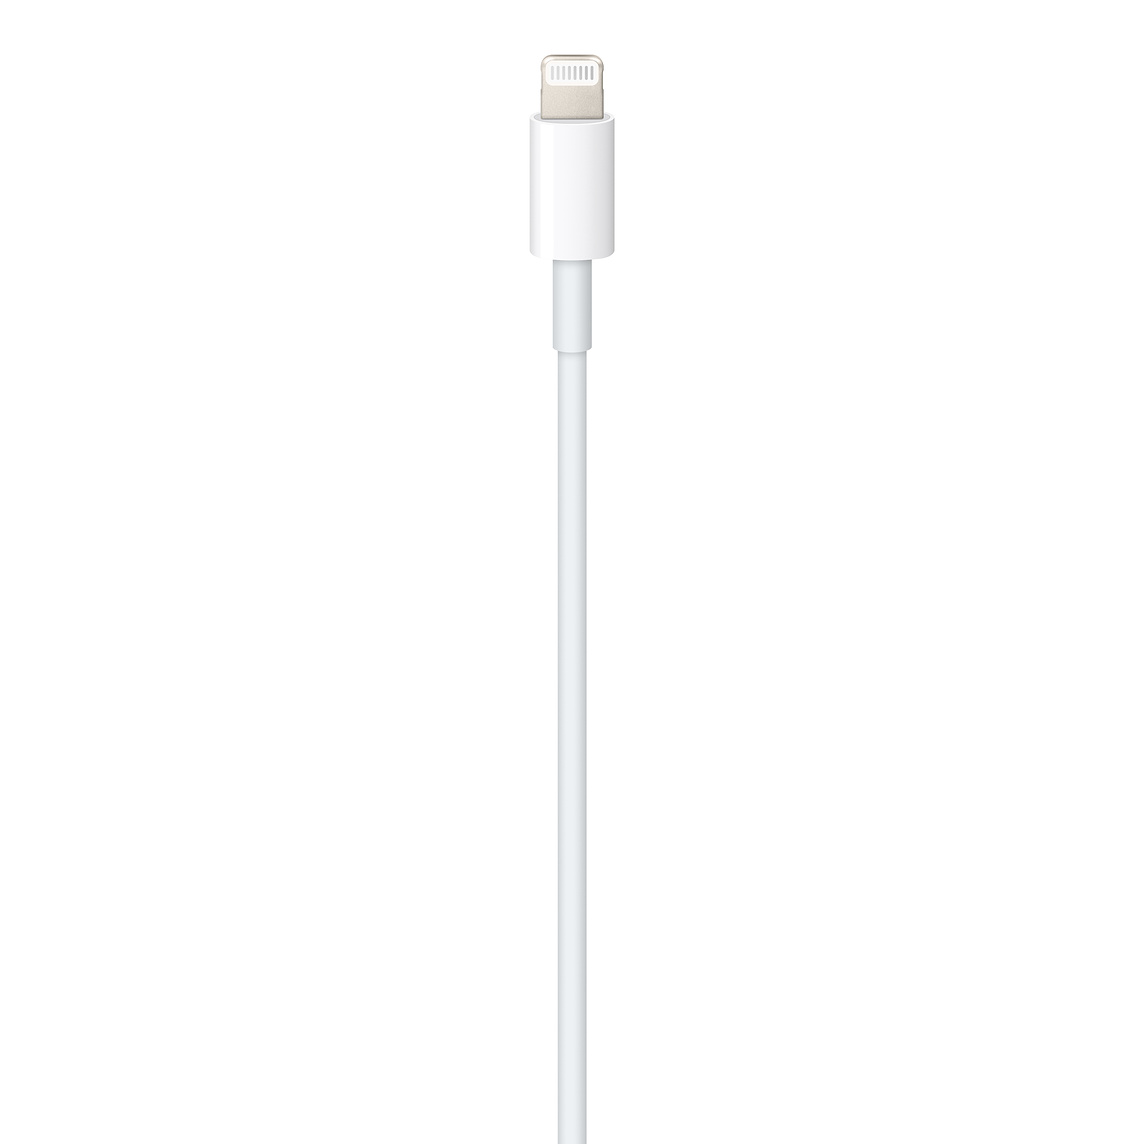 Apple USB-C to Lightning Cable (1m) - chính hãng